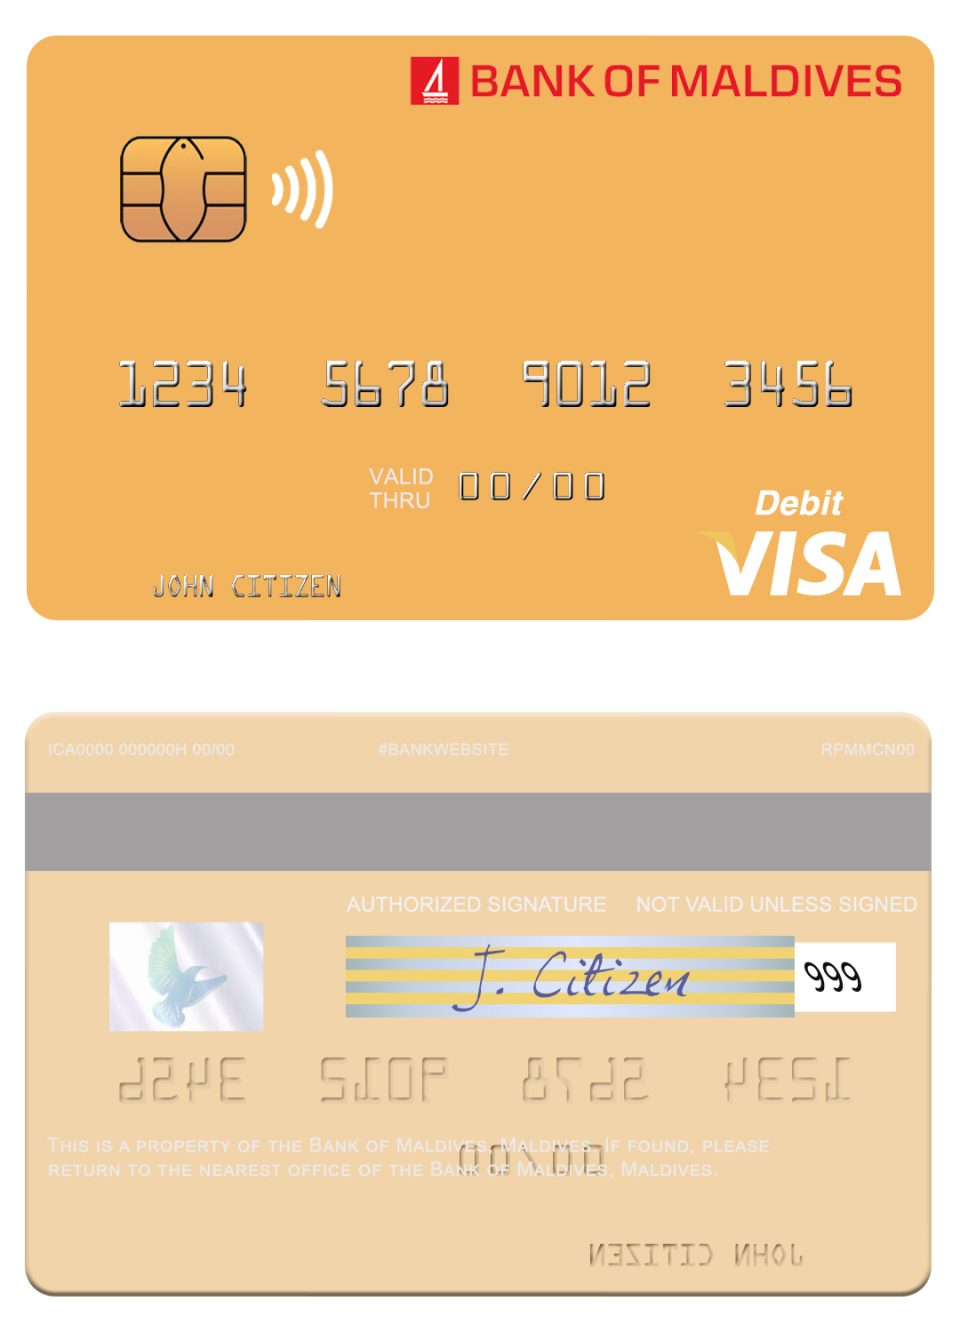 Fillable Maldives Bank of Maldives visa credit card Templates | Layer-Based PSD